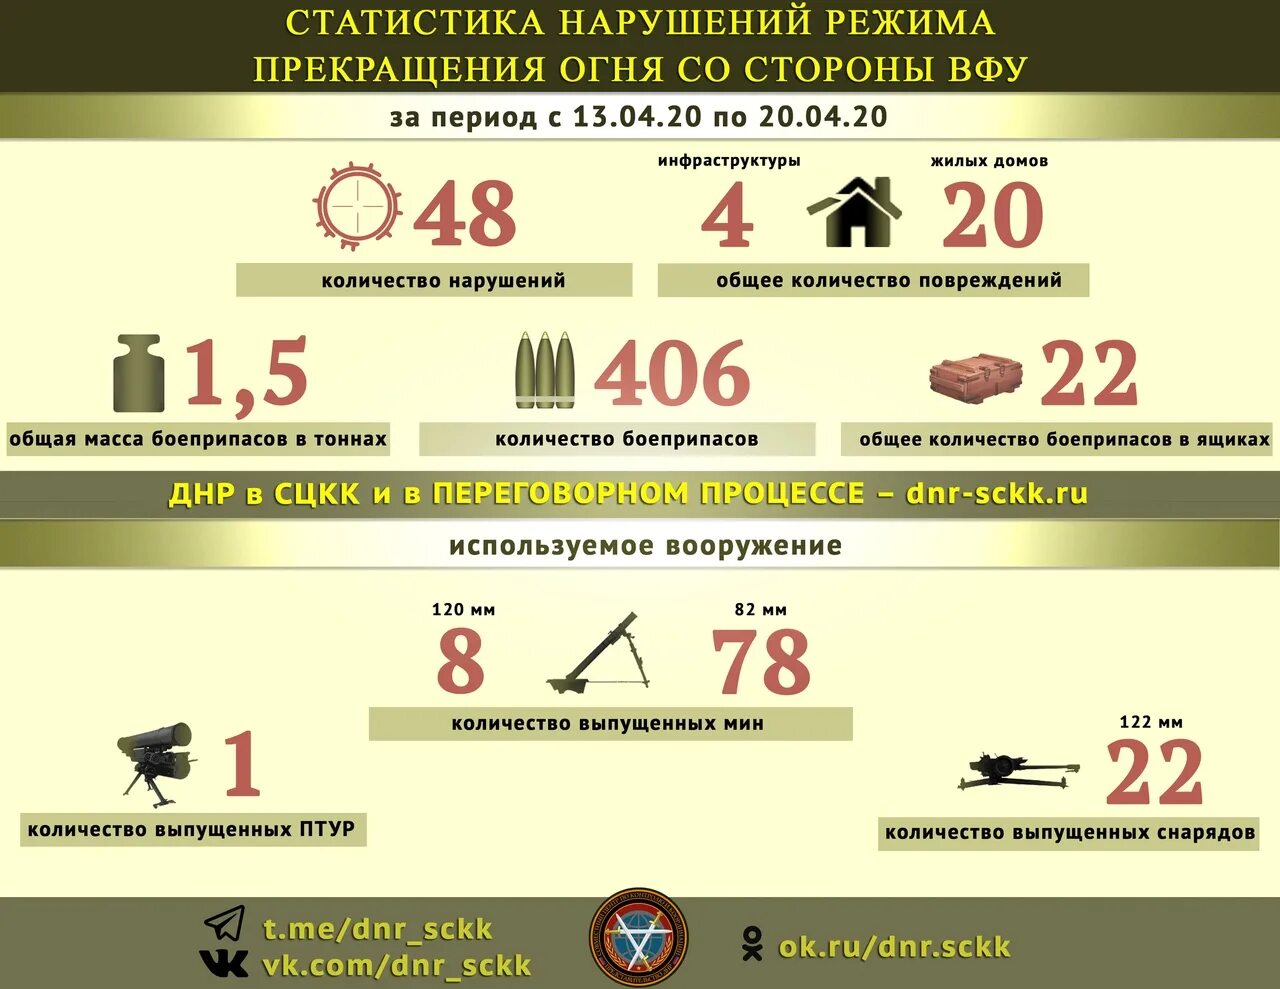 Сколько потерь на украине на сегодняшний. Украинская армия в цифрах. Статистика потерь Российской армии. Военные потери на Украине цифры. Потери ВСУ статистика.